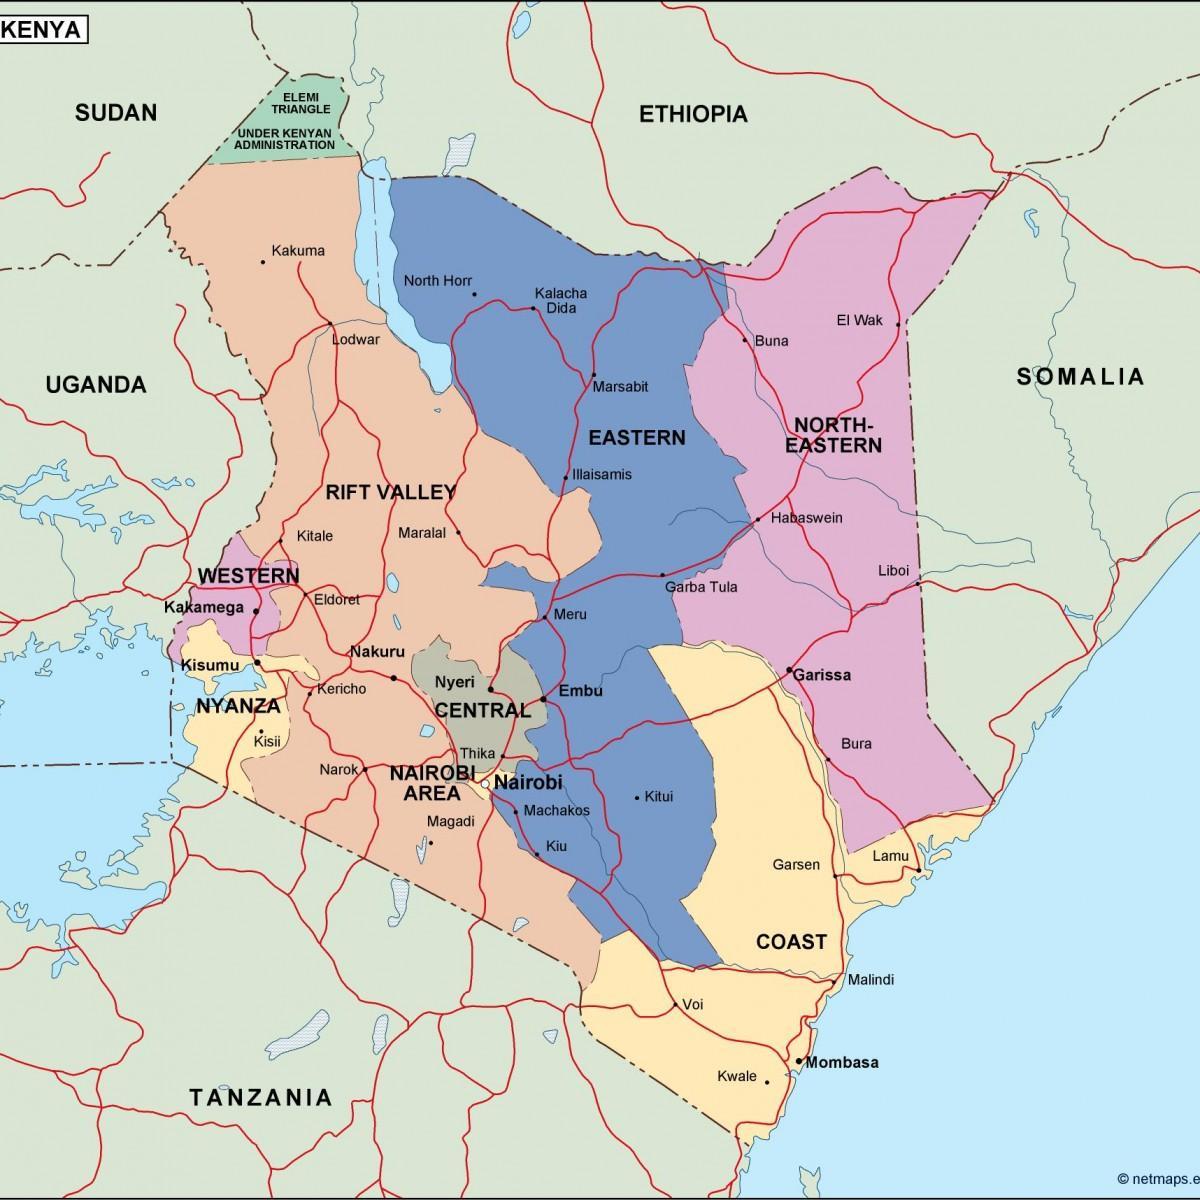 χάρτης του πολιτικού χάρτη της Κένυας